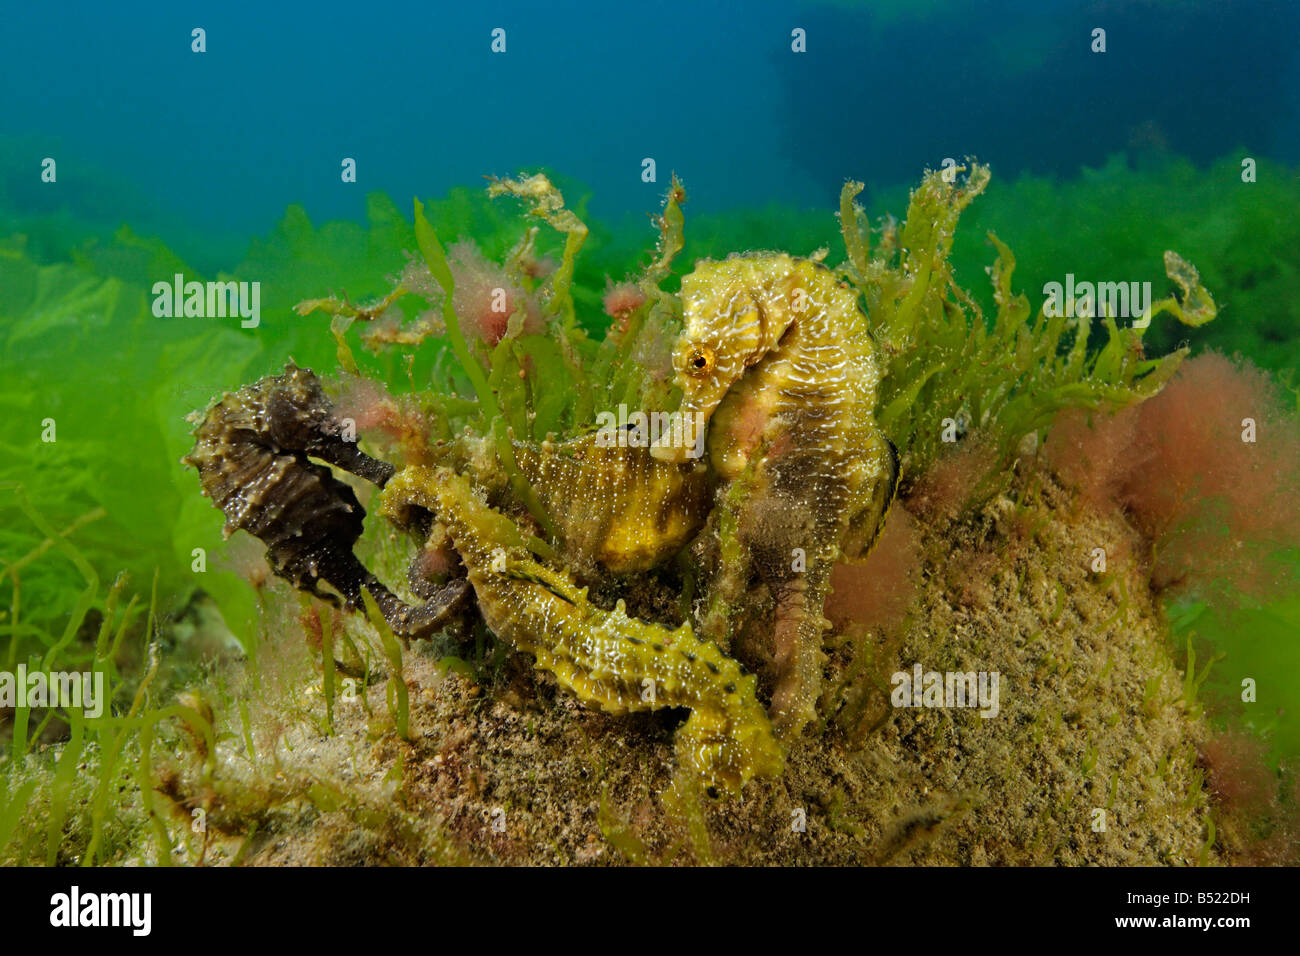 Hippocampus guttulatus Hippocampus ramulosus, lunga snouted seahorse, gruppo di quattro cavallucci marini Foto Stock